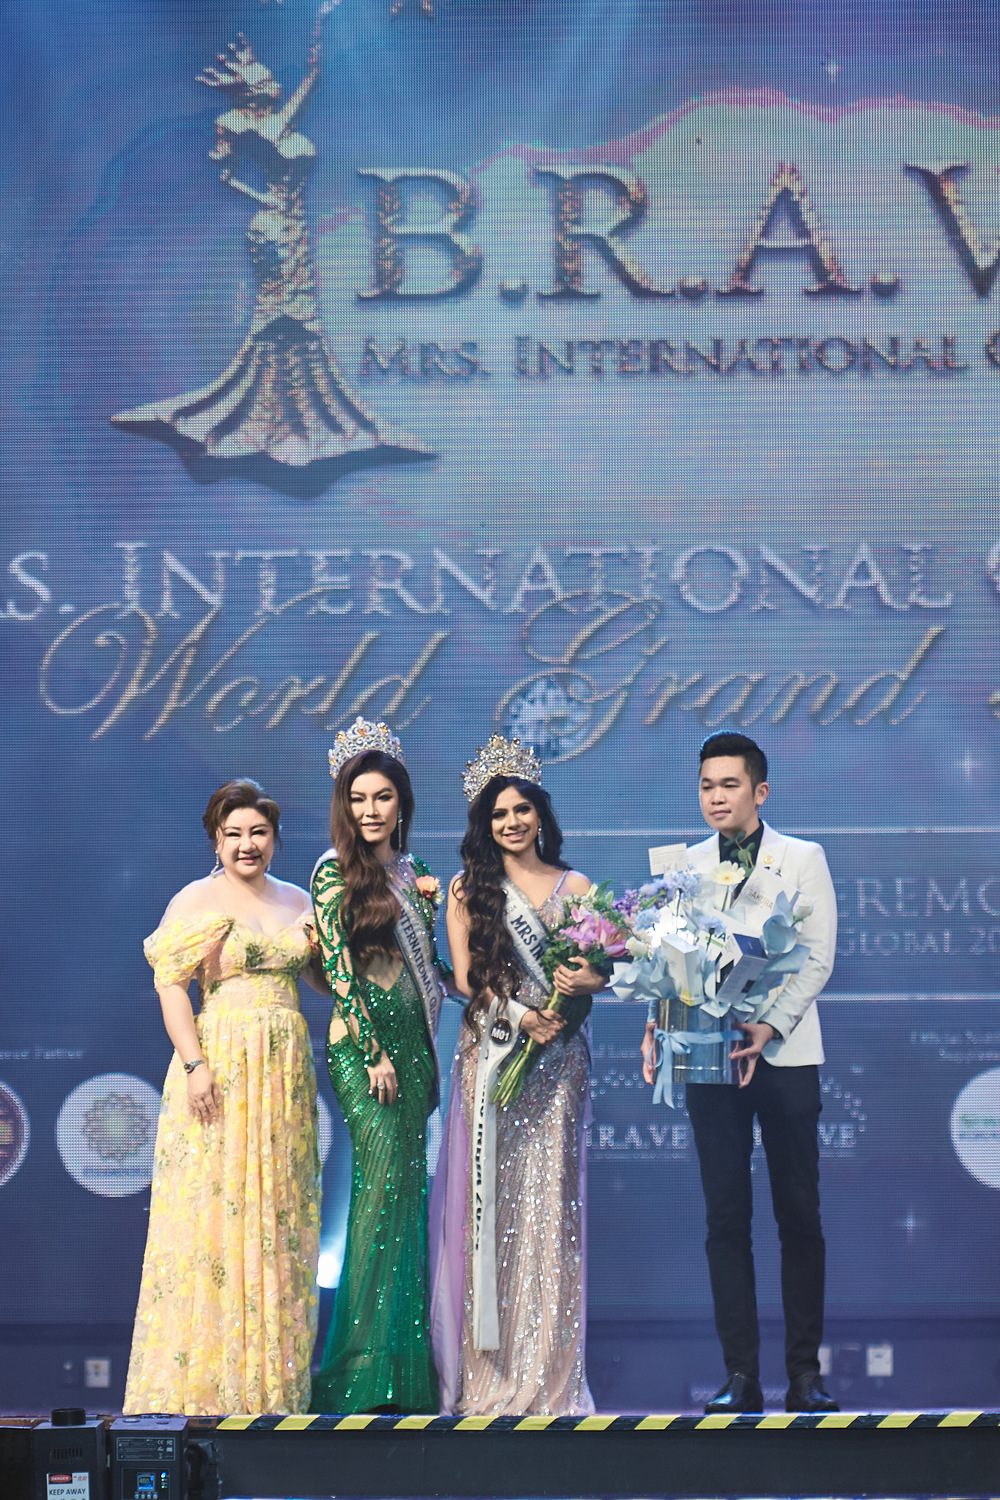 Hoa hậu Trần Hà Trâm Anh chấm thi cuộc thi quốc tế, bật khóc khi trao vương miện - Ảnh 6.